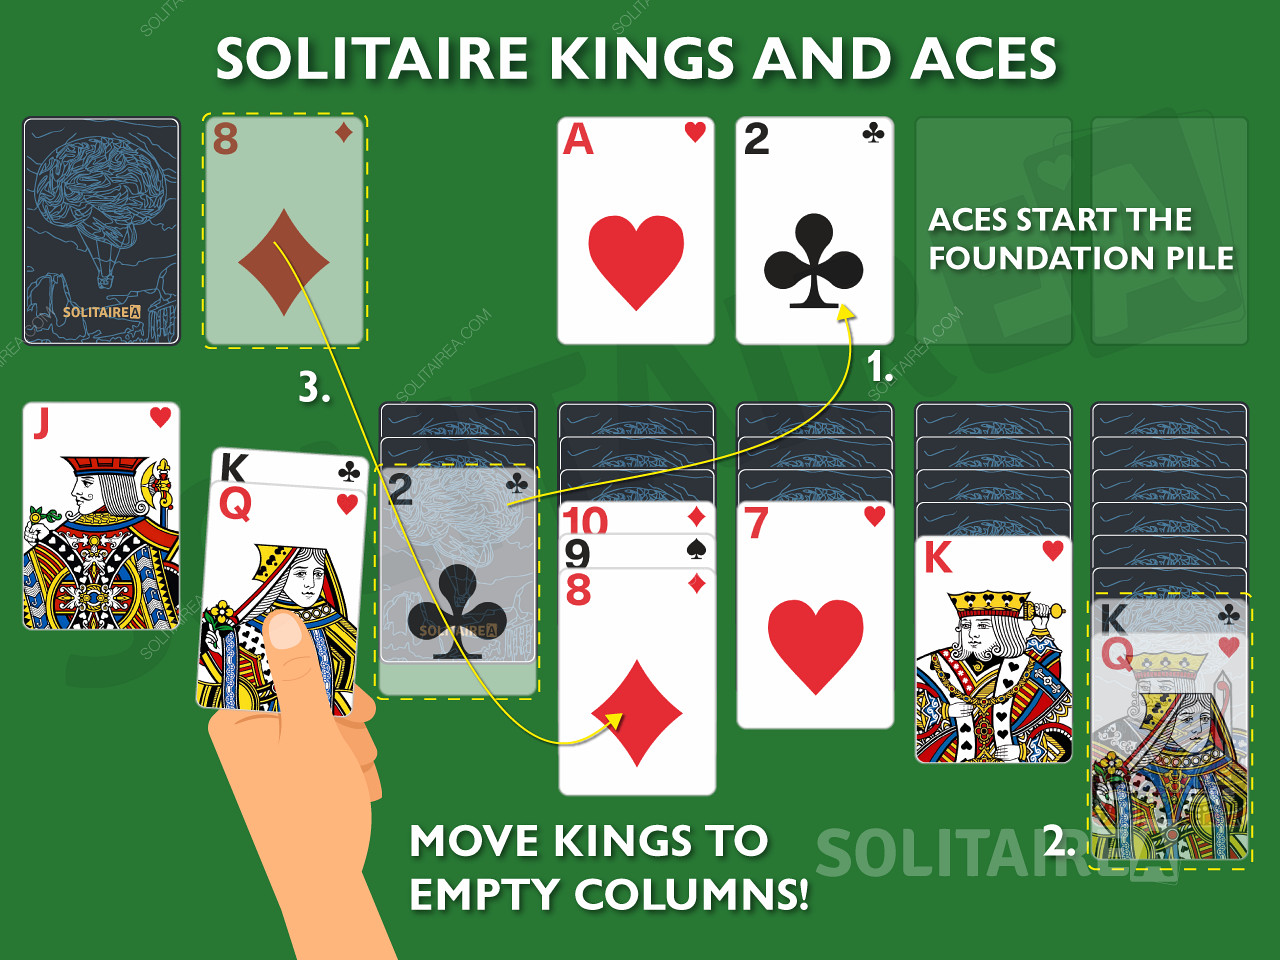 Raja dan As adalah kartu yang penting dalam Solitaire karena mereka diperbolehkan melakukan gerakan yang unik.